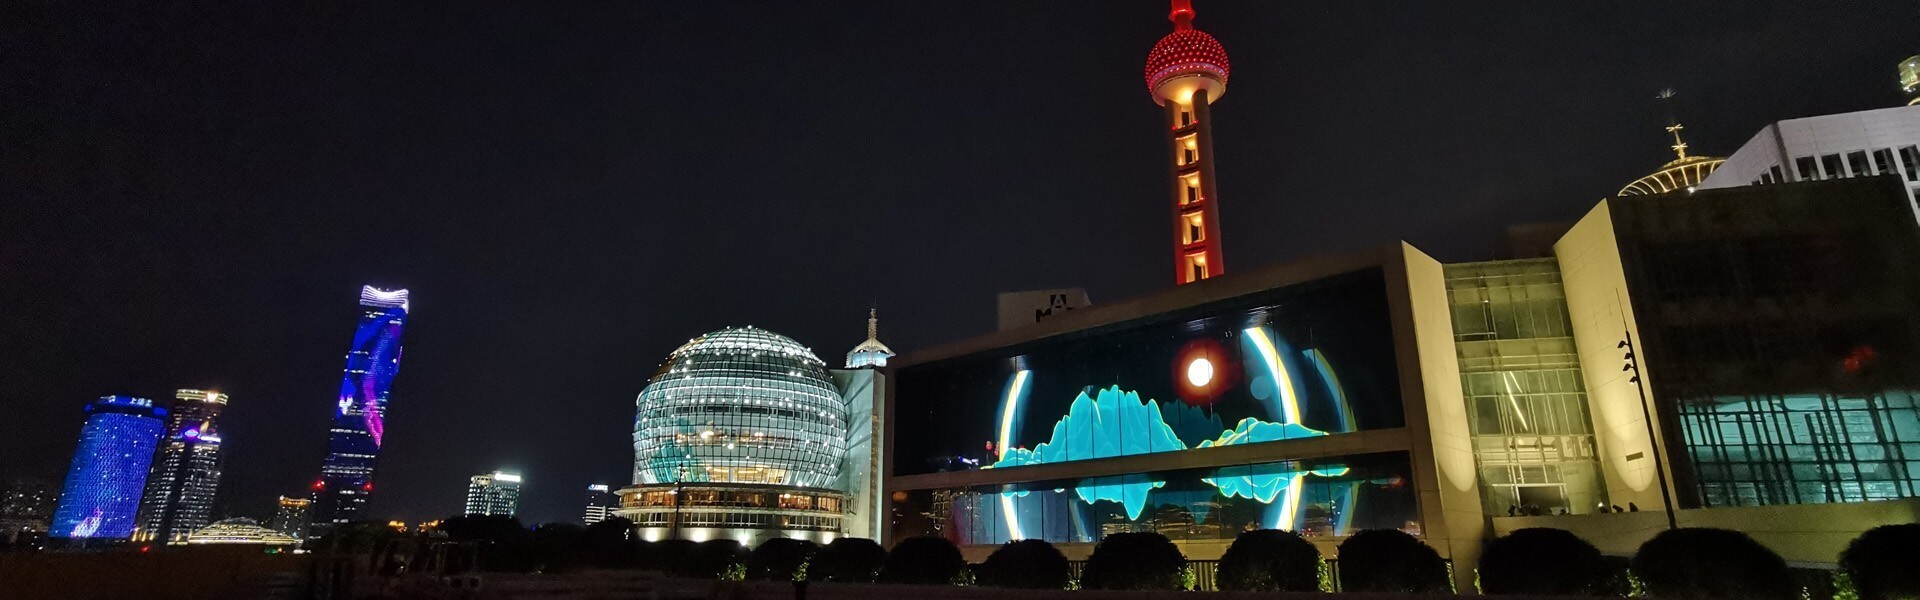 Компания LianTronics завершила строительство крупнейшей в Шанхае наружной светодиодной стены с малым шагом на открытом воздухе